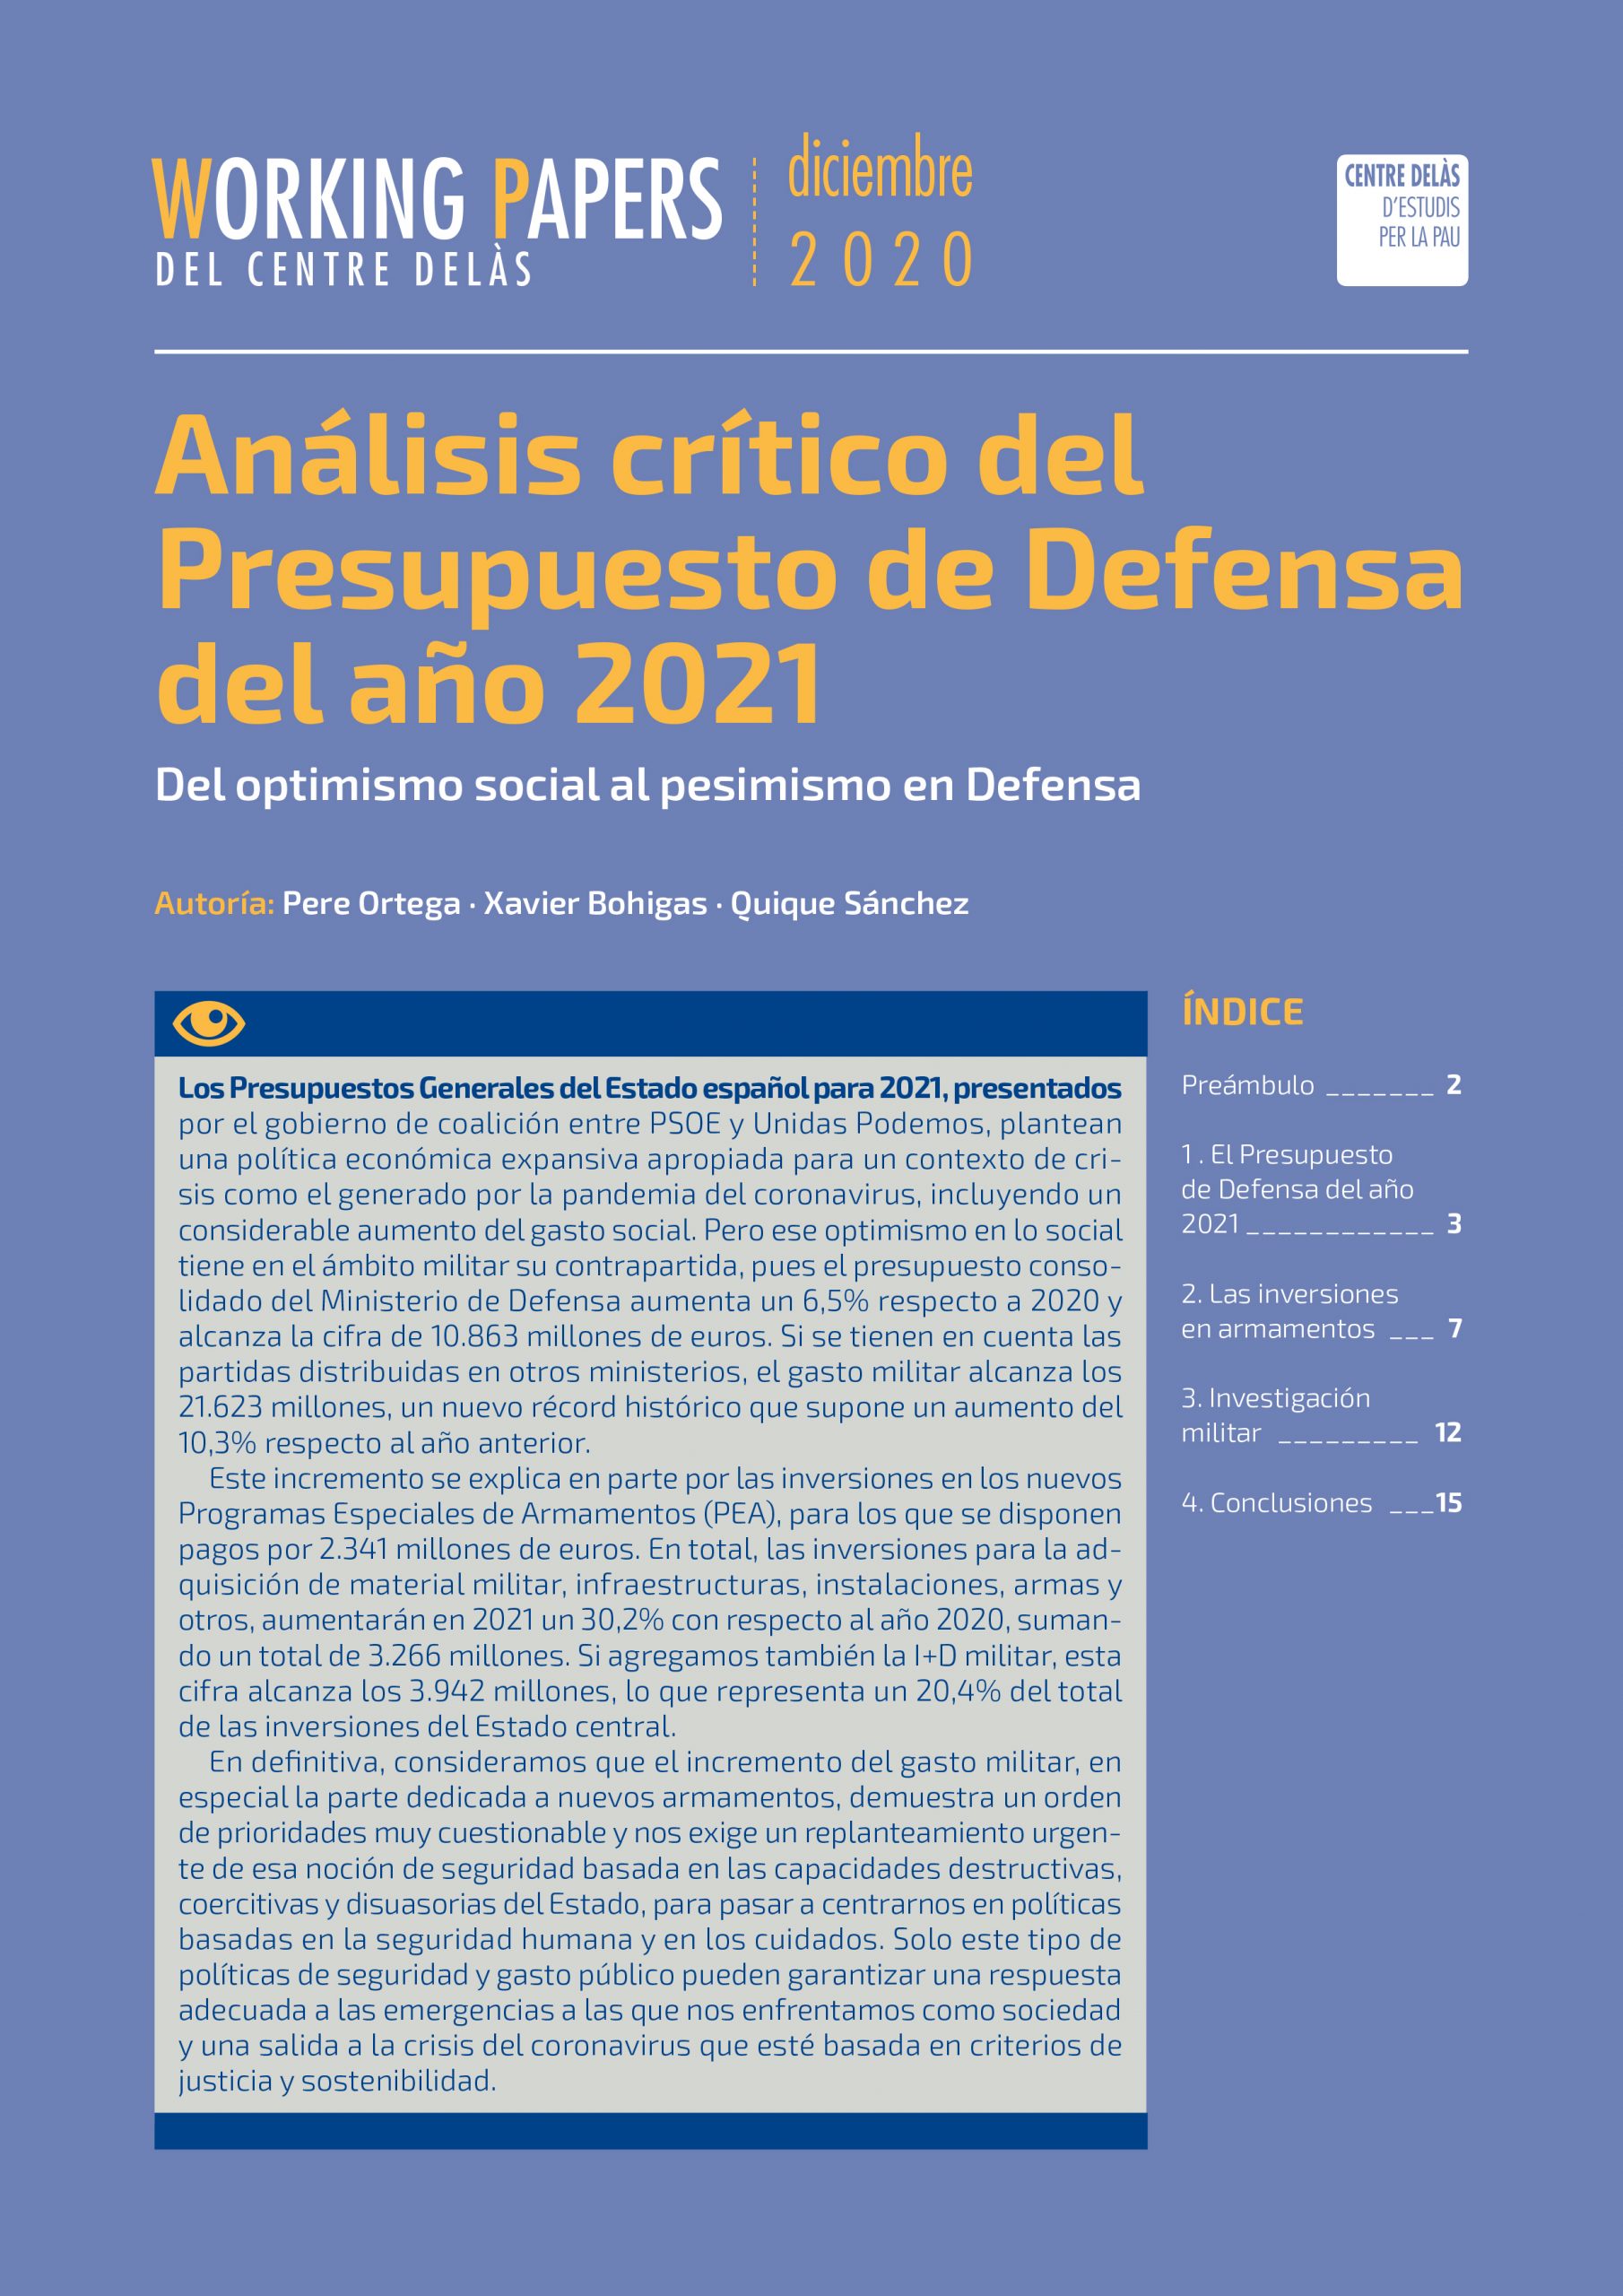 Working Paper: Análisis crítico del Presupuesto de Defensa del año 2021. Del optimismo social al pesimismo en Defensa